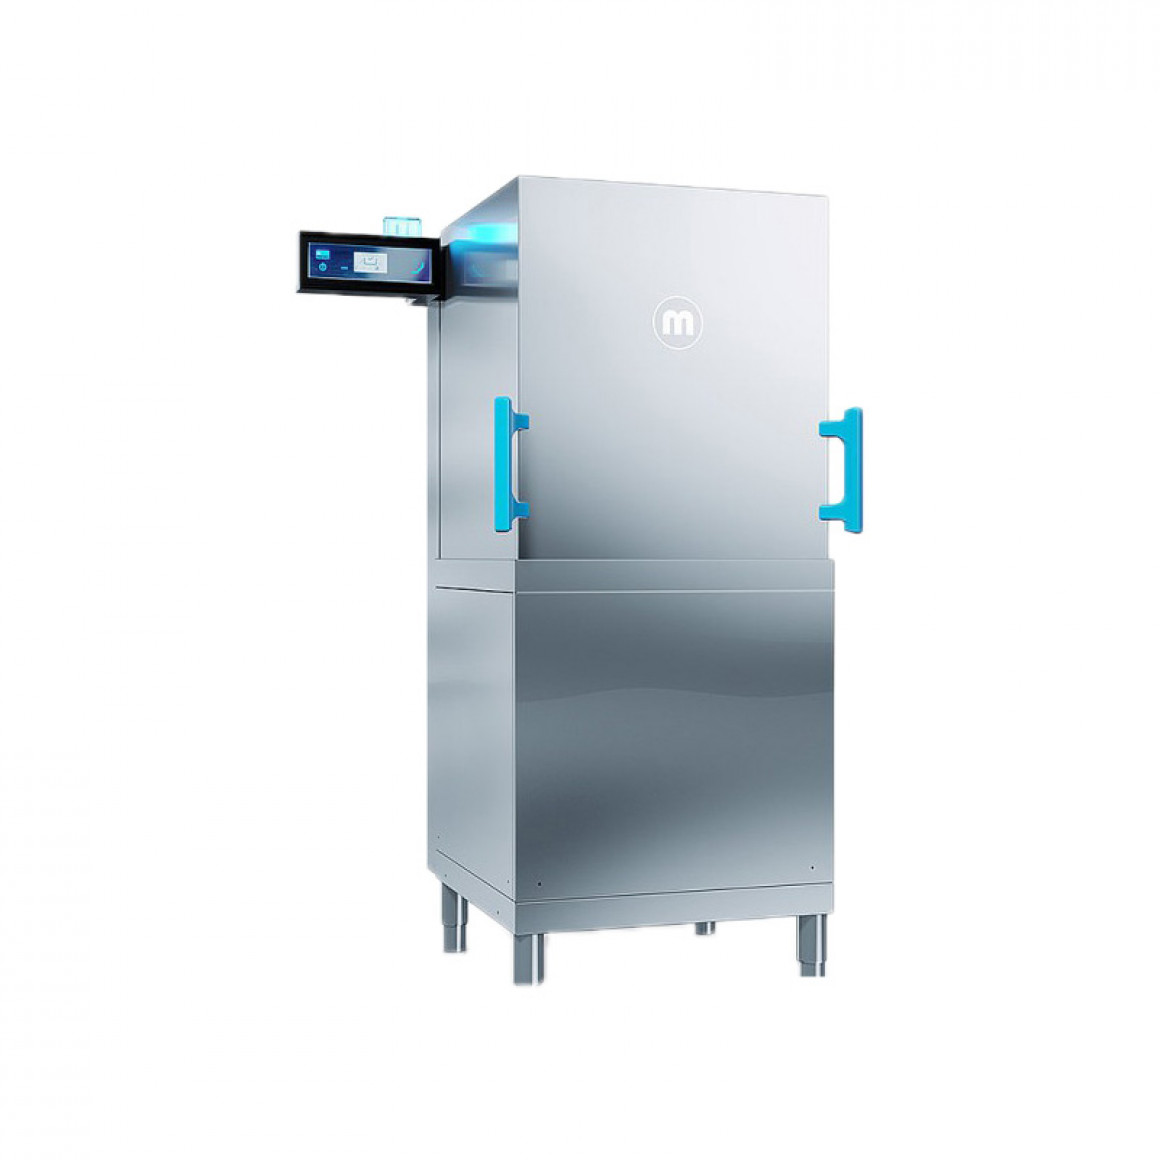 Dishwashing machine model M-iClean HM